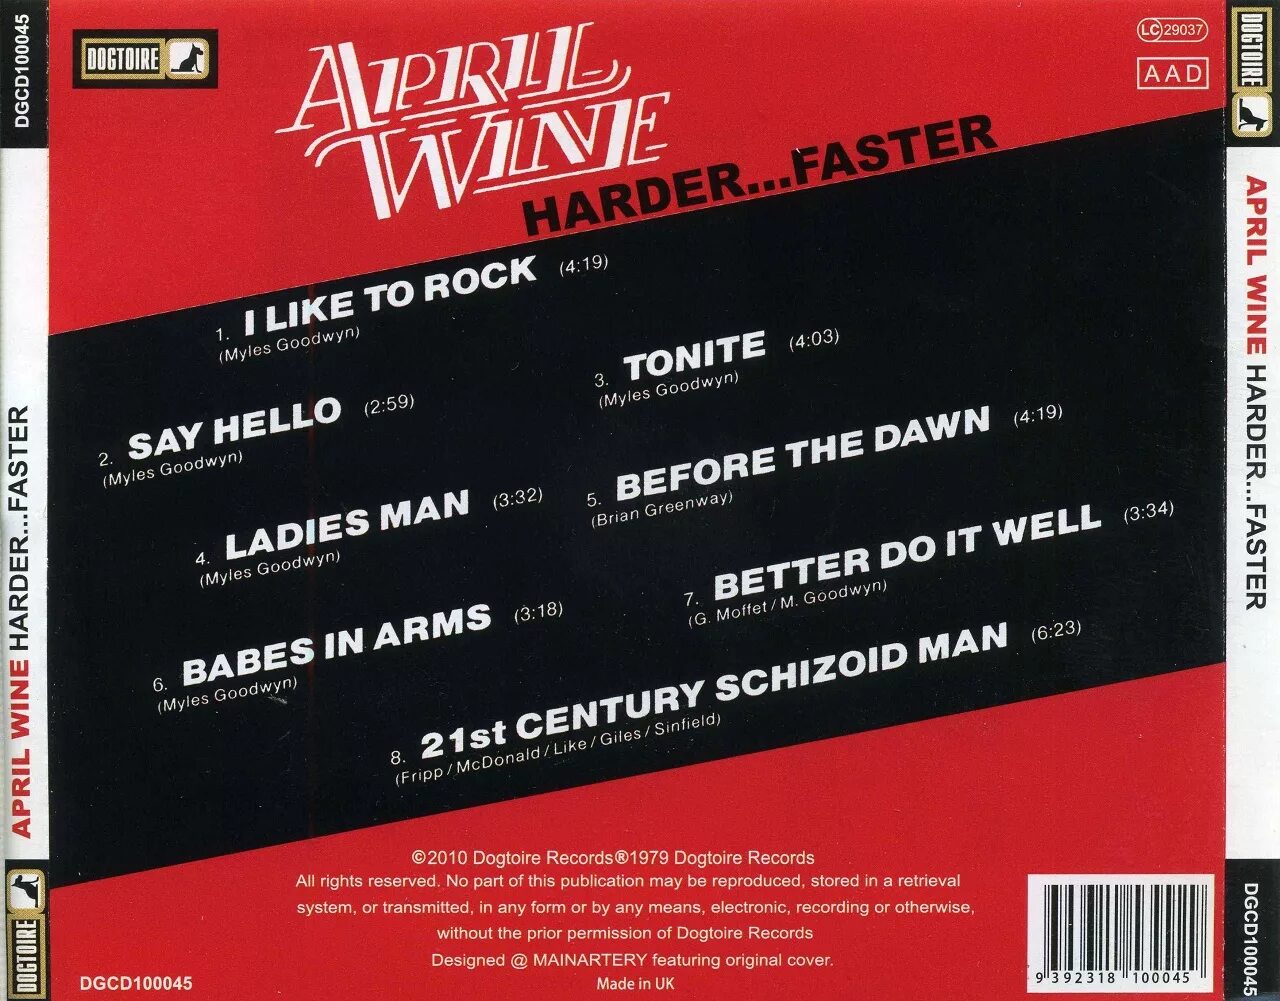 April Wine "harder... Faster". April Wine CD. April Wine harder faster 1979. April Wine 1971 April Wine.